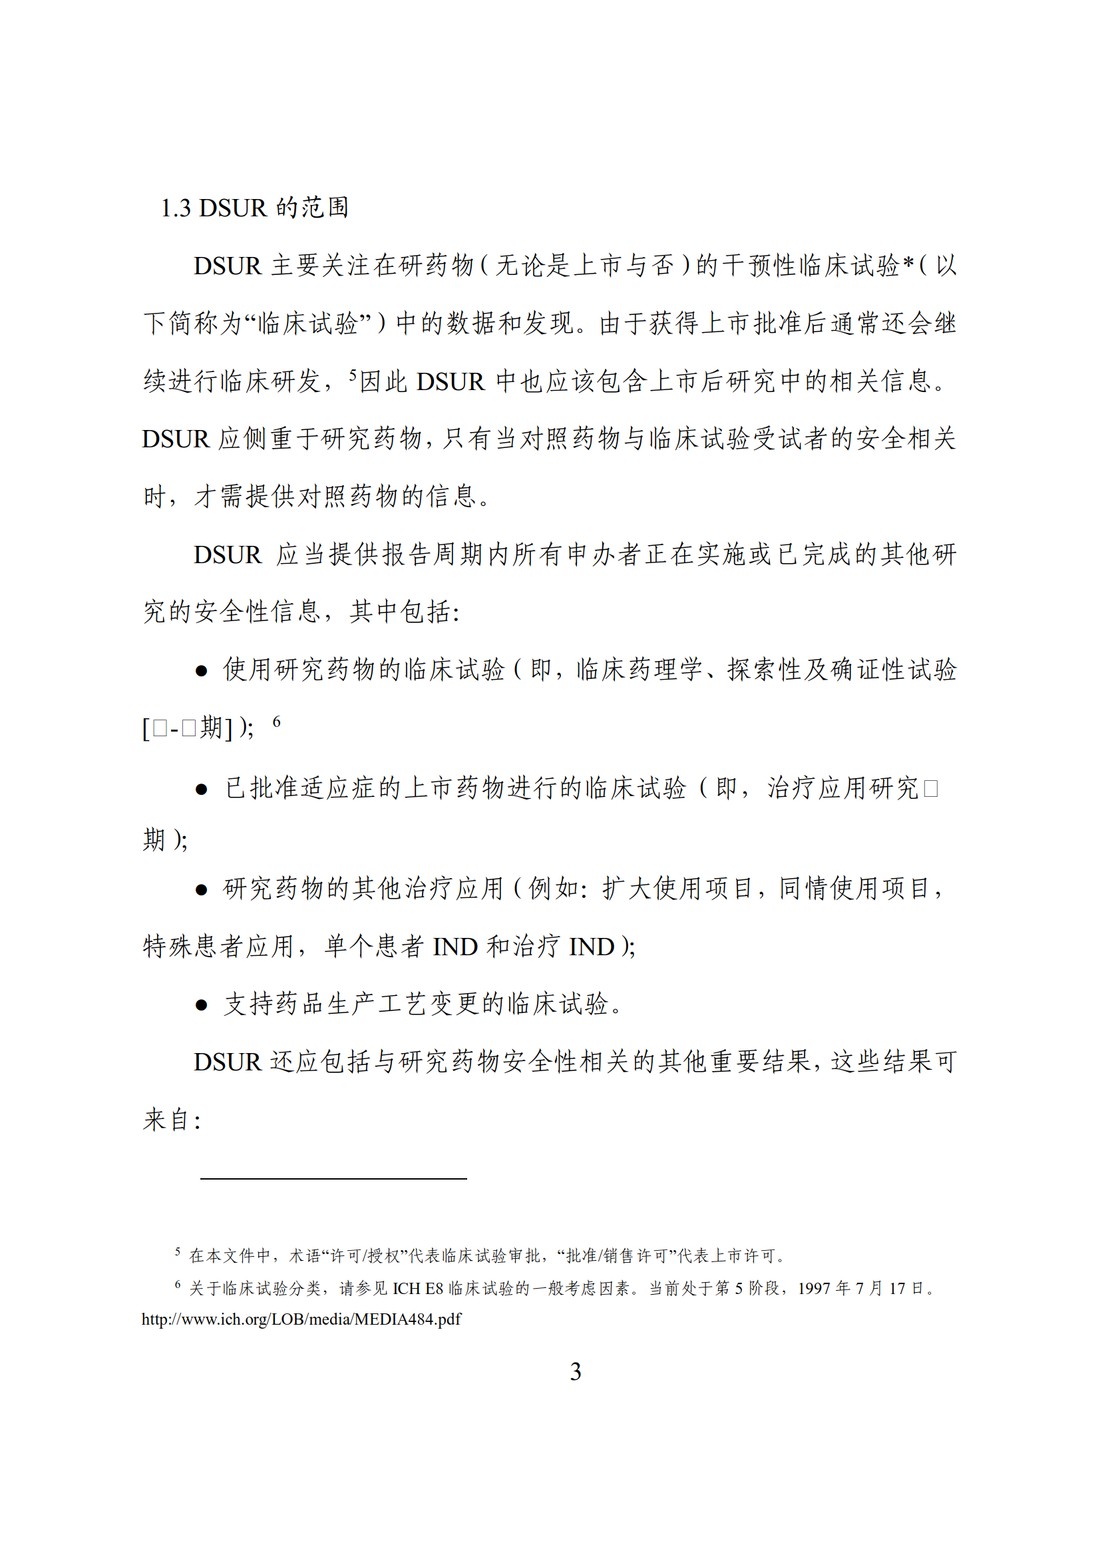 E2F 研发期间安全性更新报告(中文翻译公开征求意见稿)_08.jpg